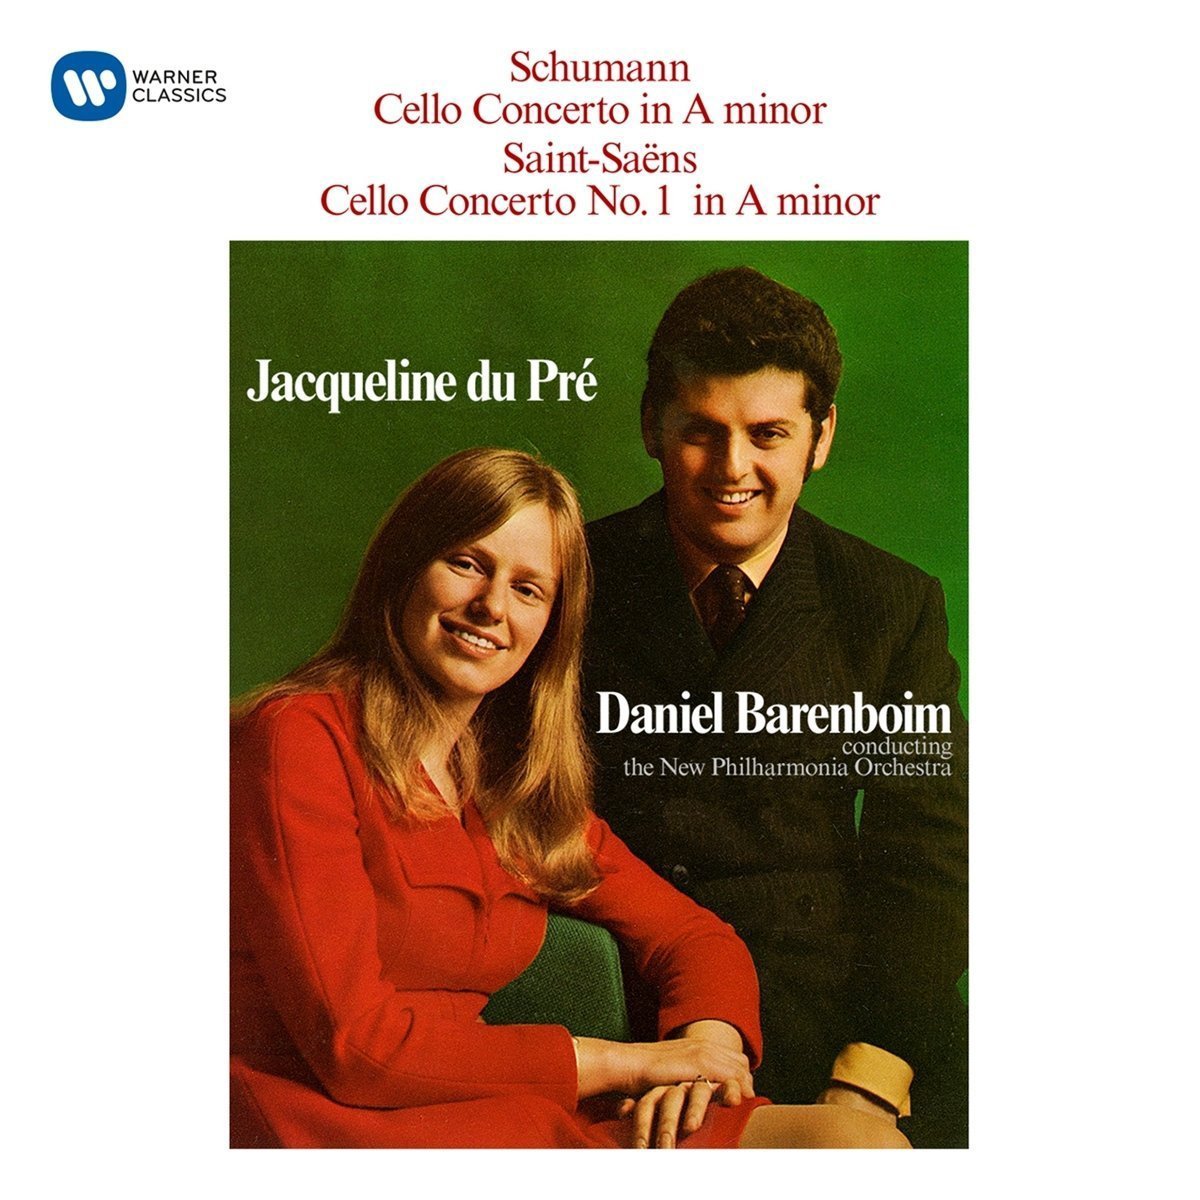 Schumann - Cello Concerto / Saint-Saens: Cello Concerto No. 1 | Daniel Barenboim, Jacqueline Du Pre image4